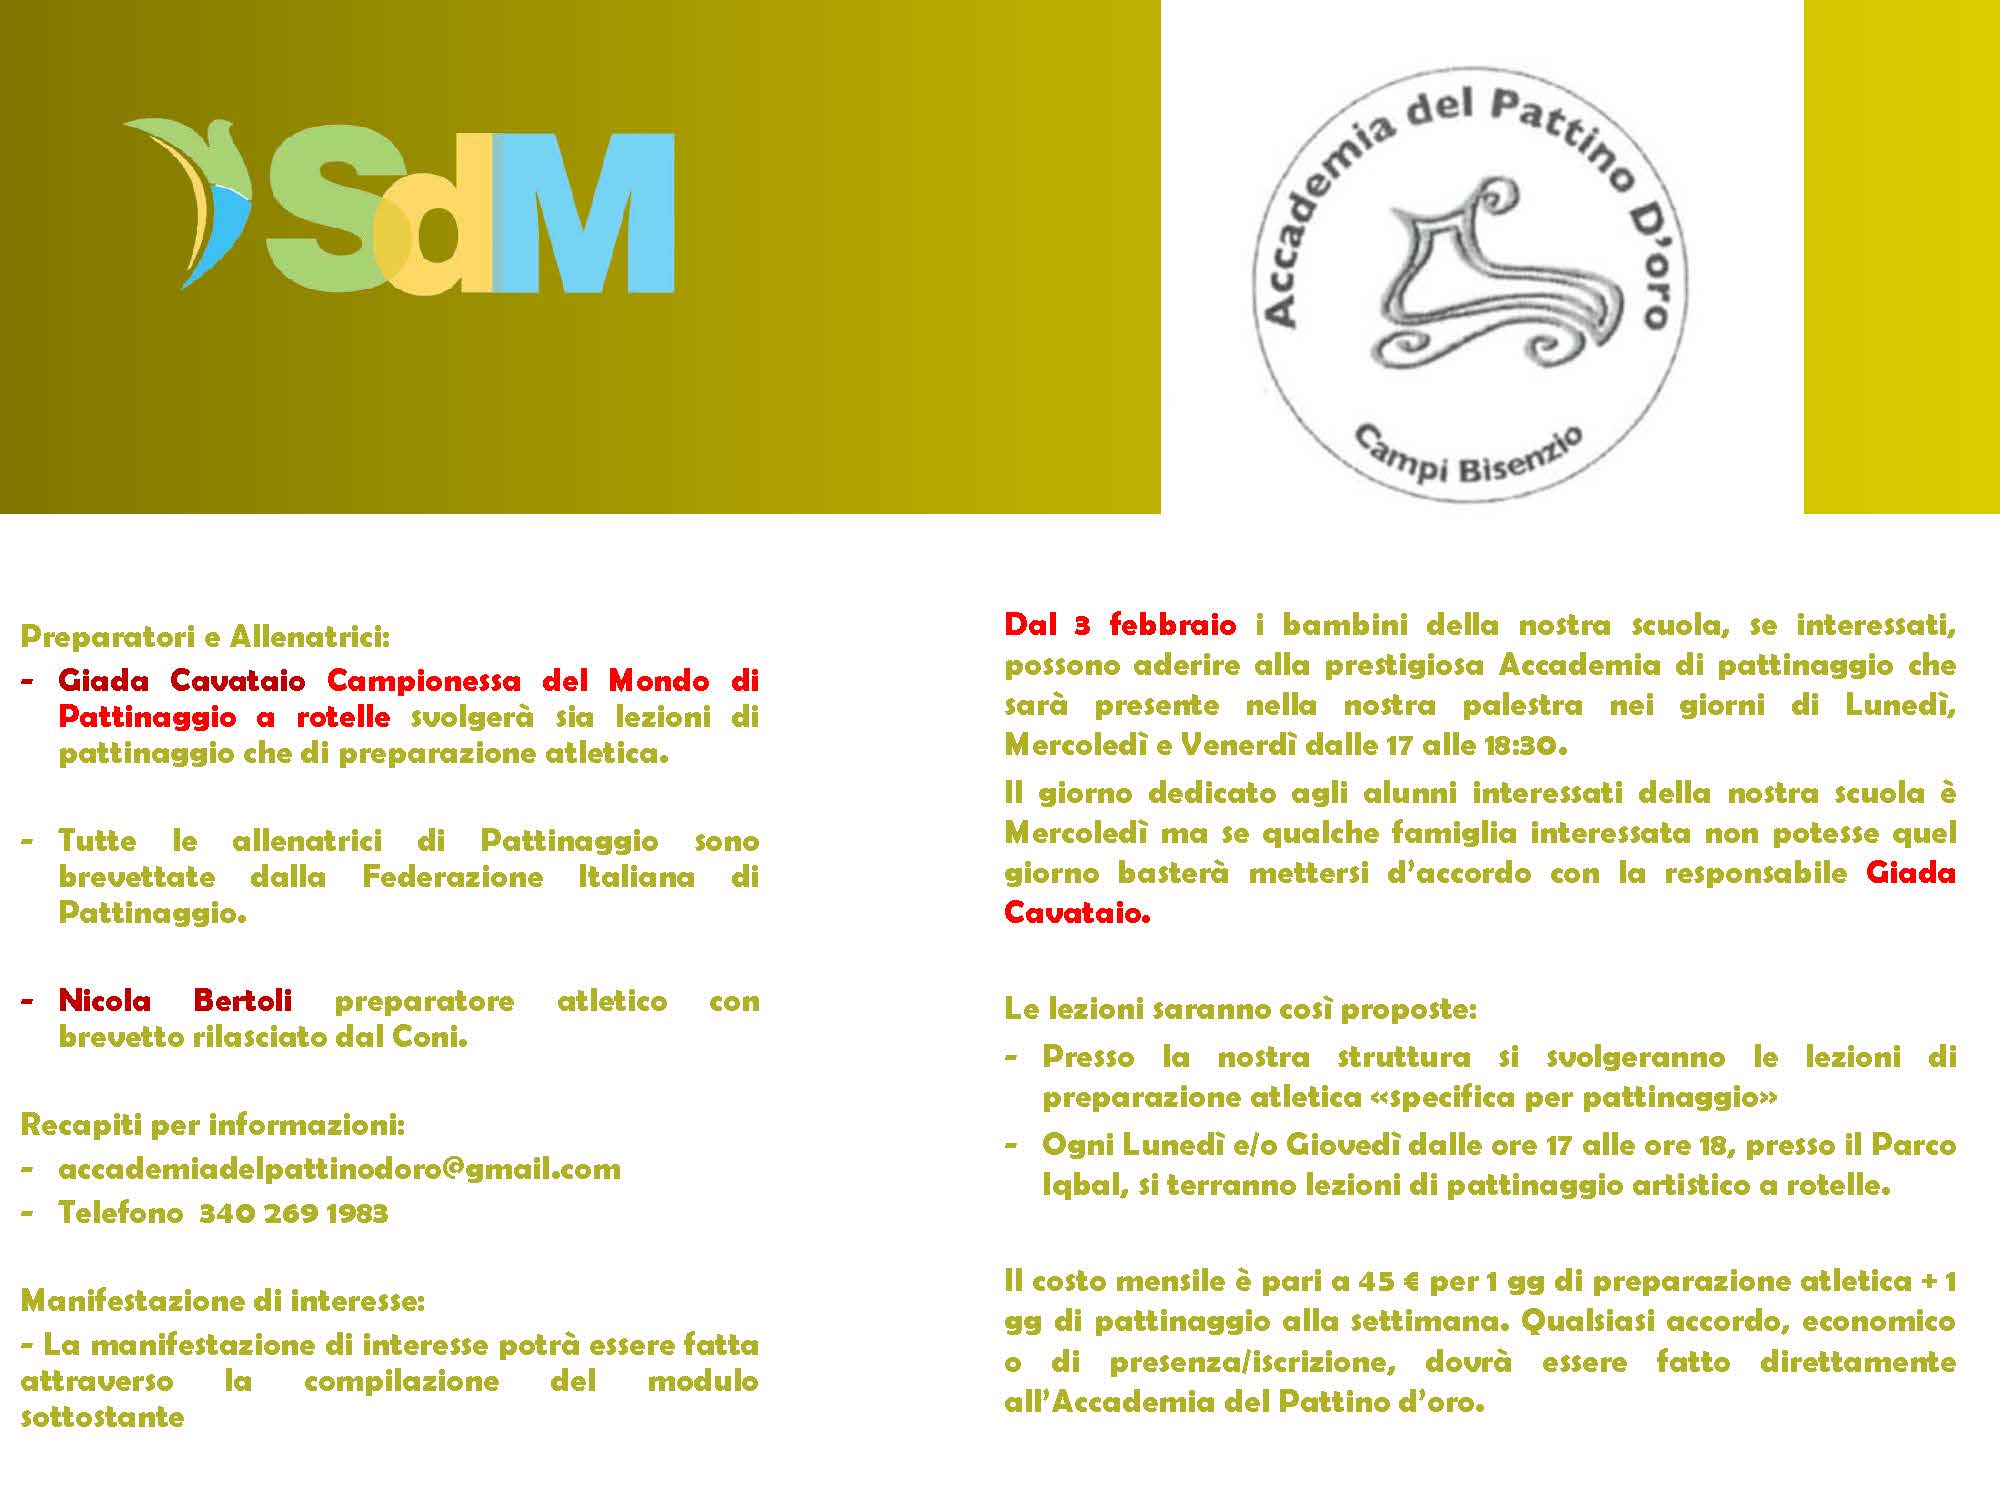 SDM_partnership_con_Accademia_del_Pattinaggio_doro_Pagina_2.jpg